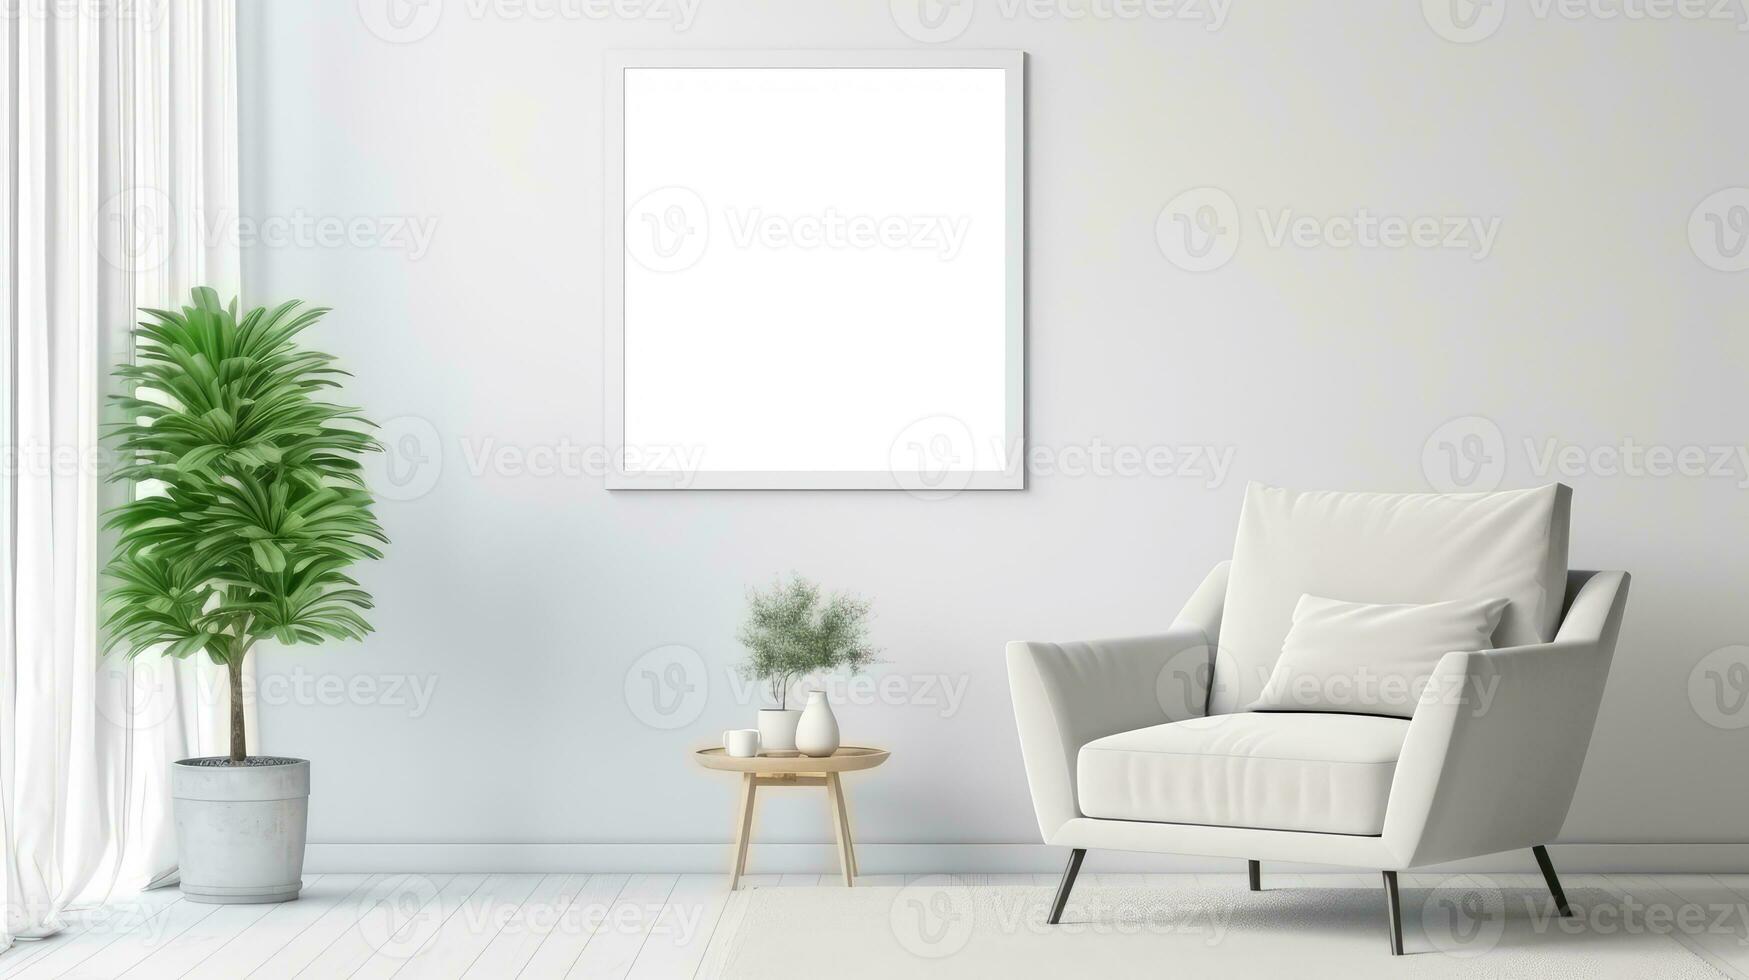 blanco vacío marco póster Bosquejo portafolio vivo habitación presentación mueble vivo habitación blanco foto